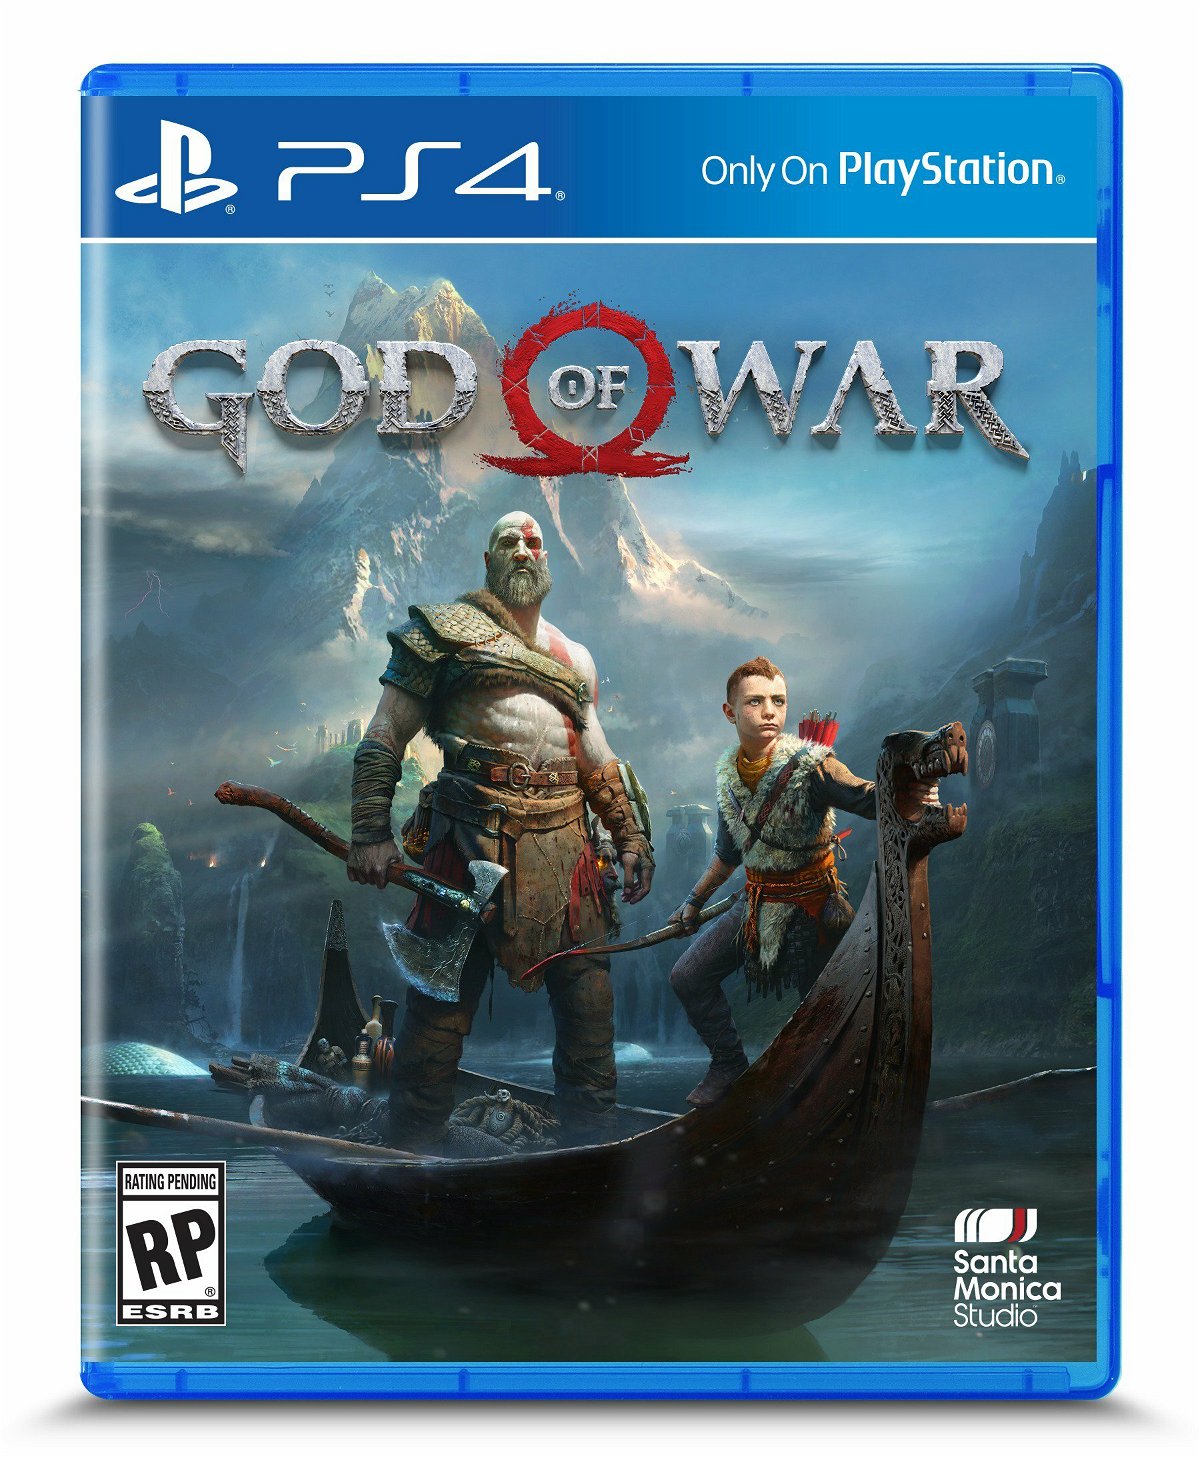 La copertina ufficiale del nuovo capitolo di God of War per PS4